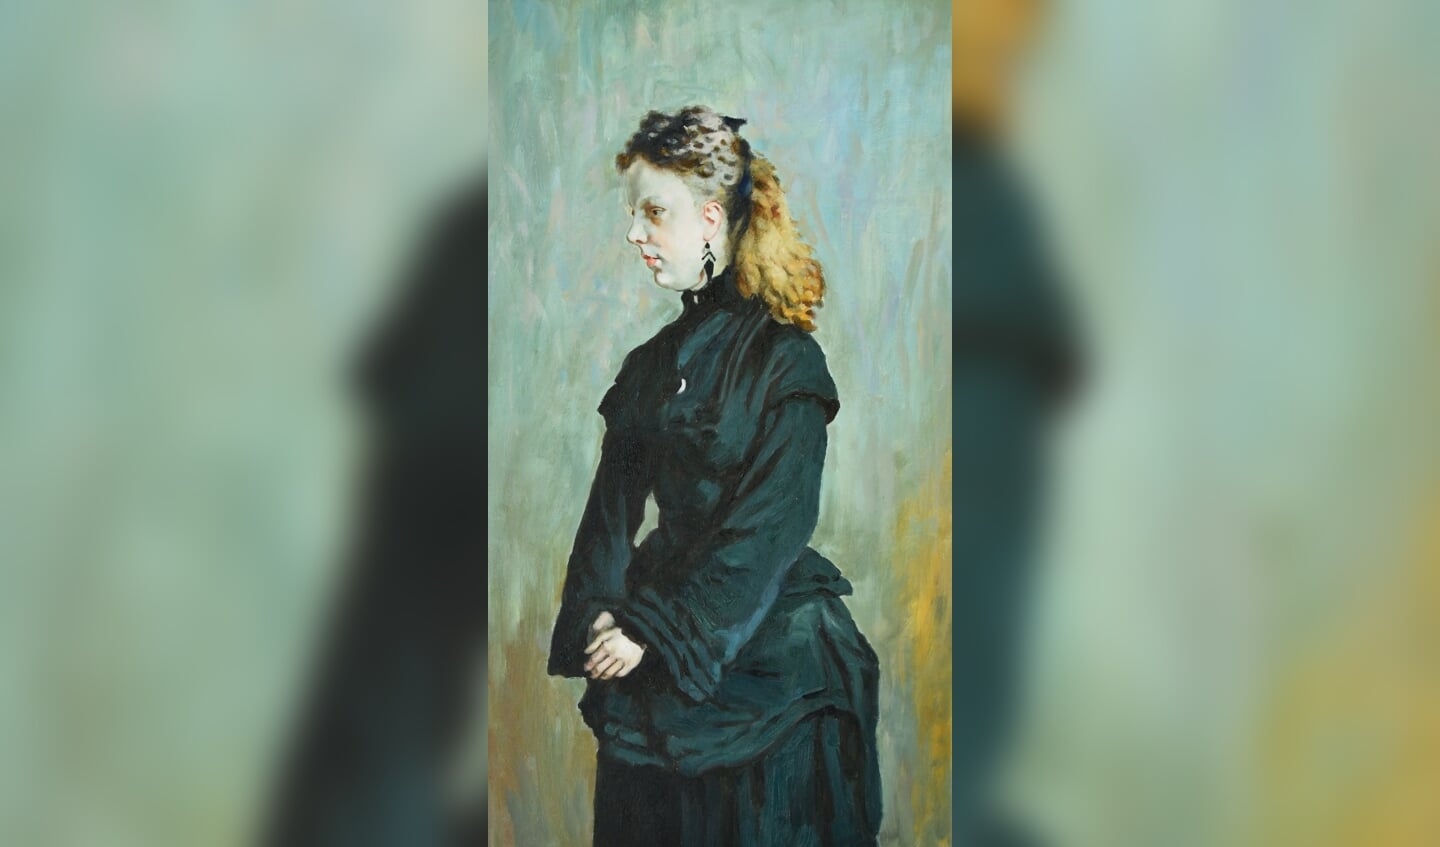 Guurtje van der Stadt, het enige bekende portret  van Monet uit de Zaanstreek hangt ook in het Monet atelier (als replica). Het origineel hing ooit in Koog aan  de Zaan in het herenhuis waar Guurtje getrouwd was met Ericus Gerardus Duyvis.   